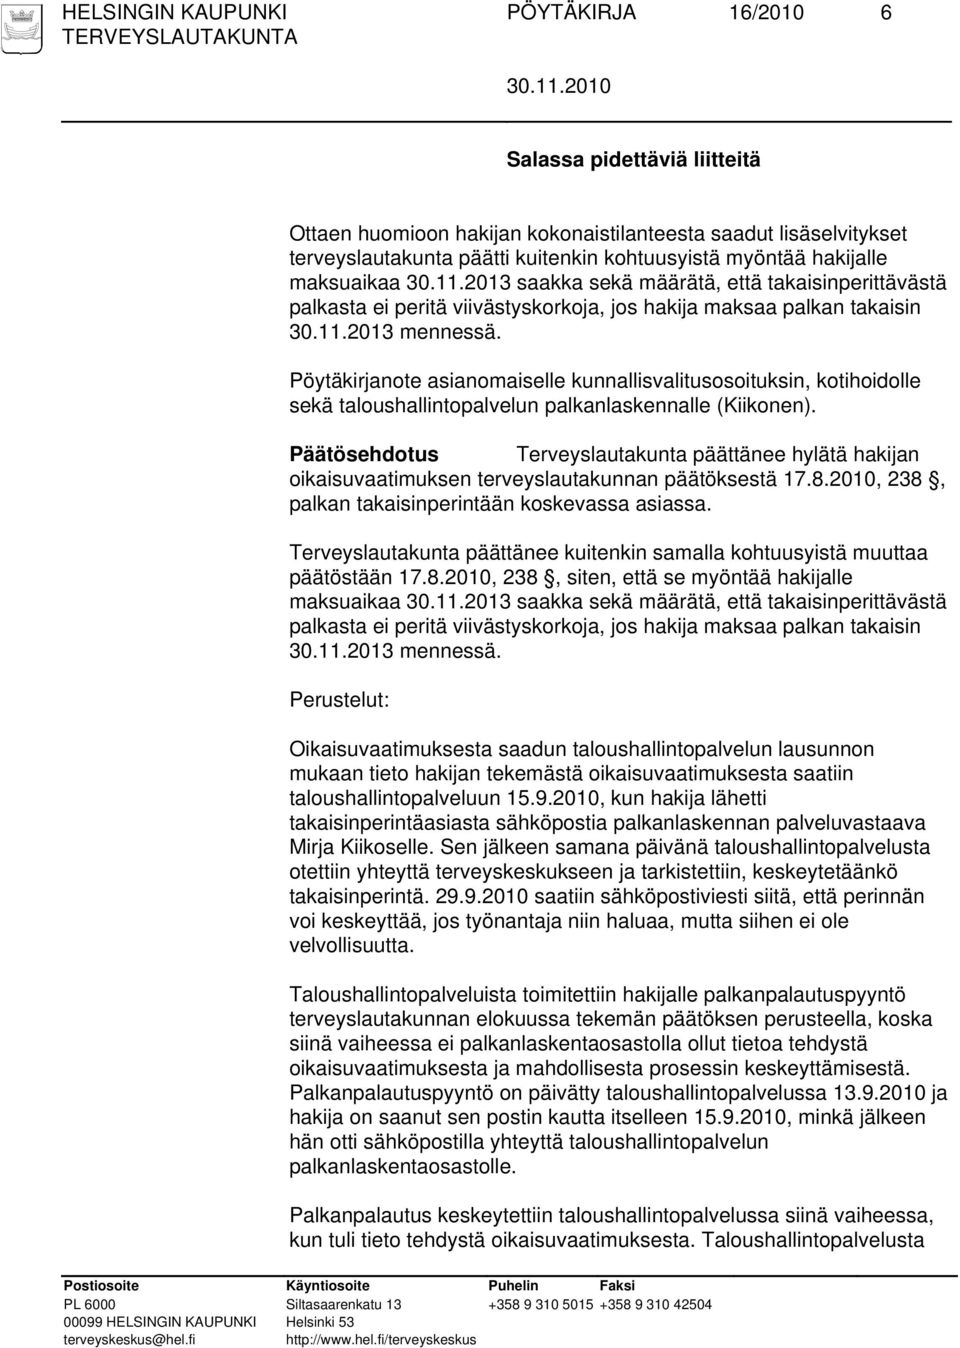 Pöytäkirjanote asianomaiselle kunnallisvalitusosoituksin, kotihoidolle sekä taloushallintopalvelun palkanlaskennalle (Kiikonen).